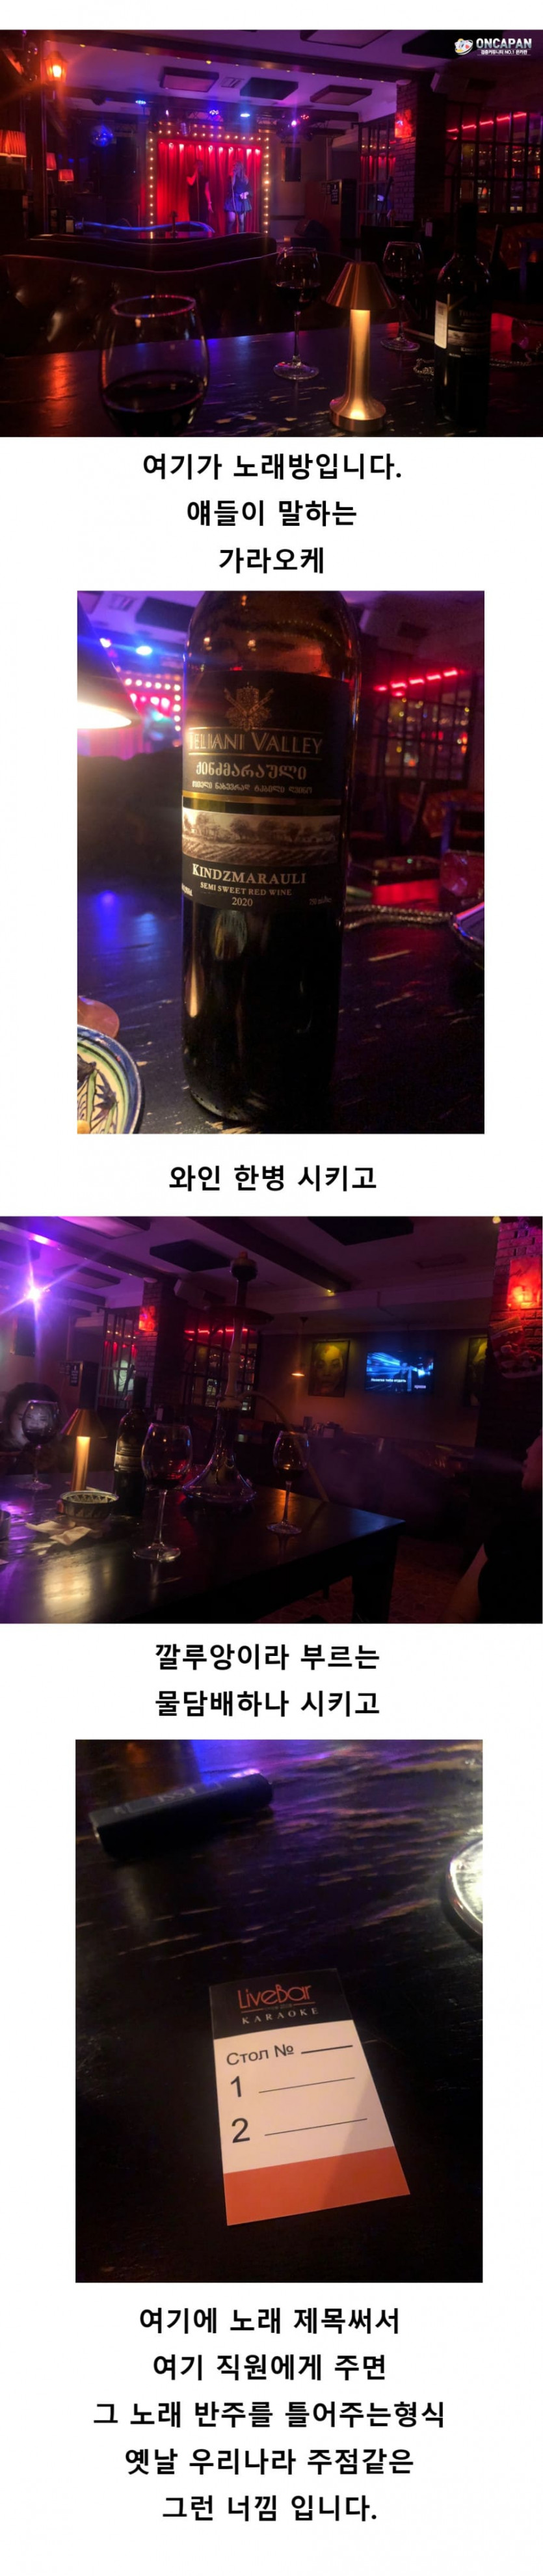 김뿡의 해외라이프 - 클럽이 후편(후장아님.)(7)